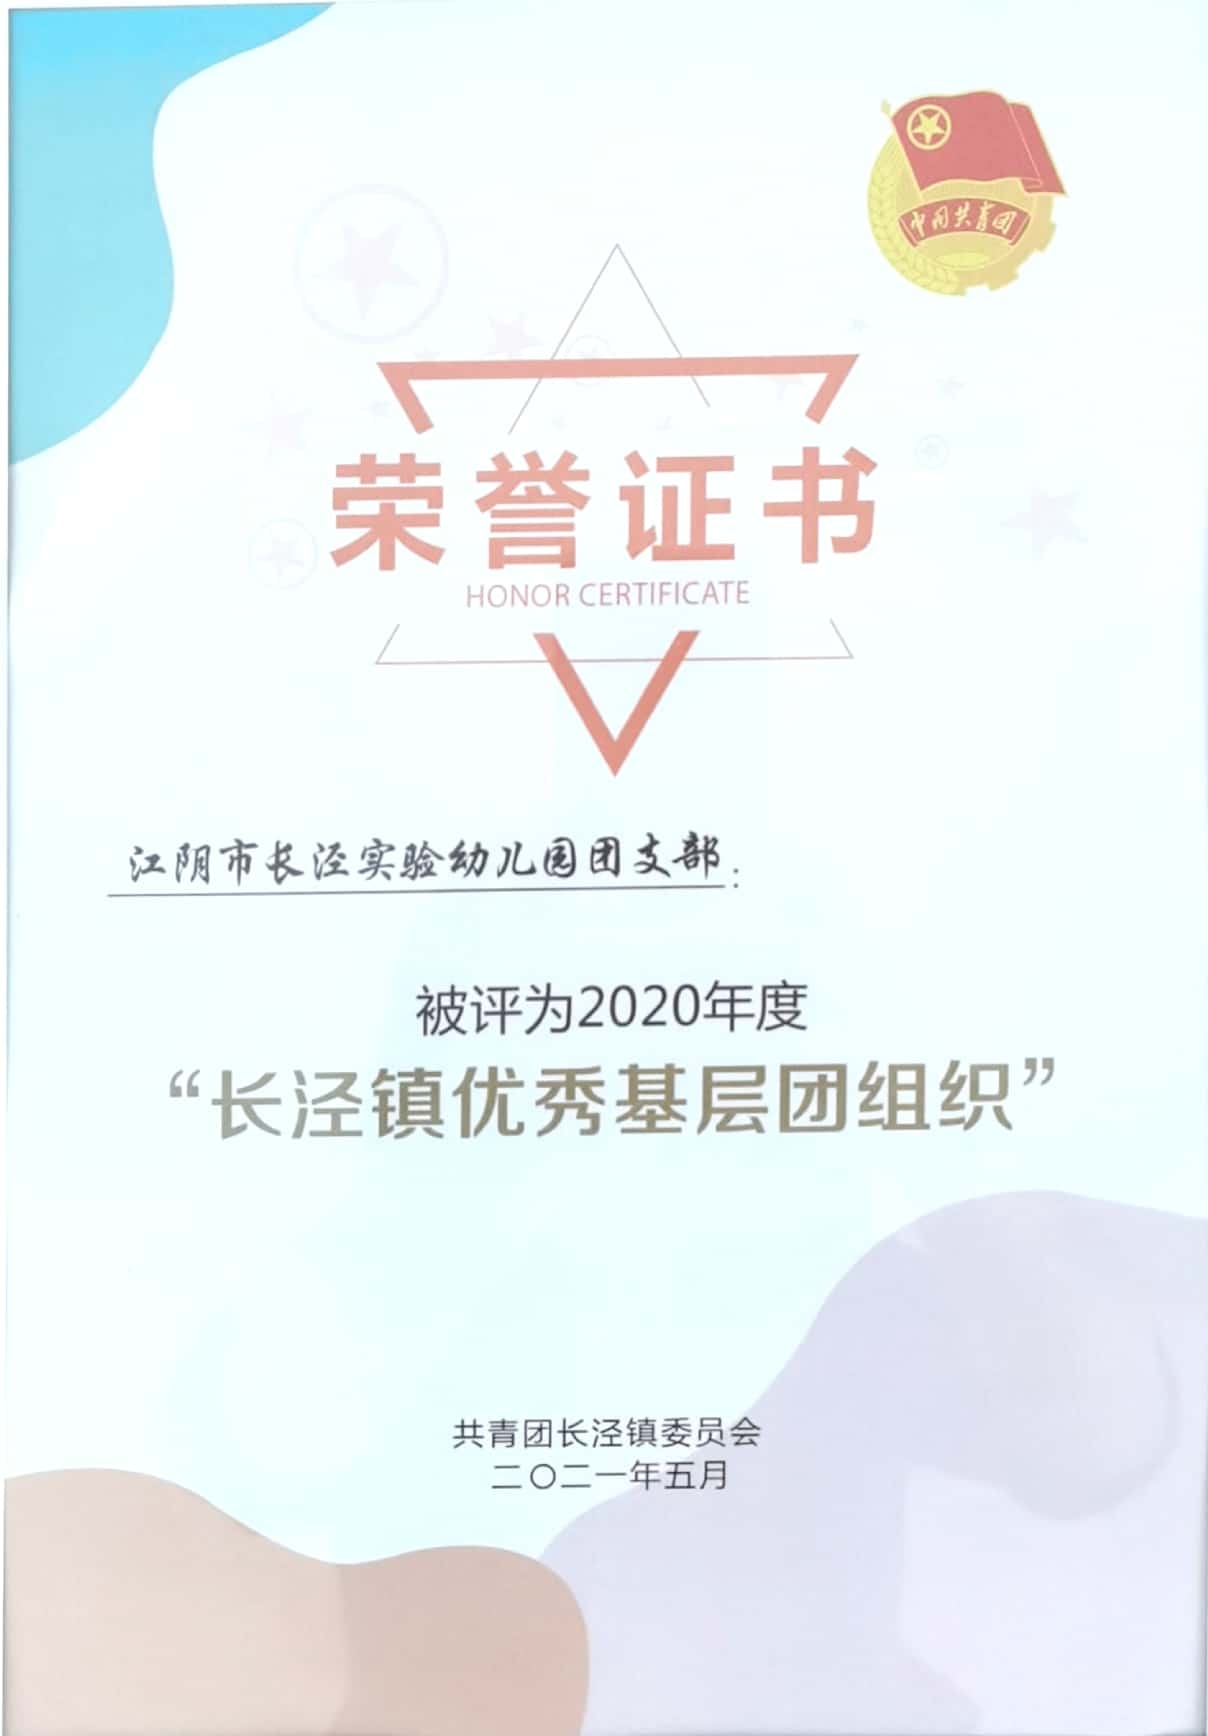 81、长泾实验幼儿园团支部被评为2020年度长泾镇优秀基层团组织.jpg